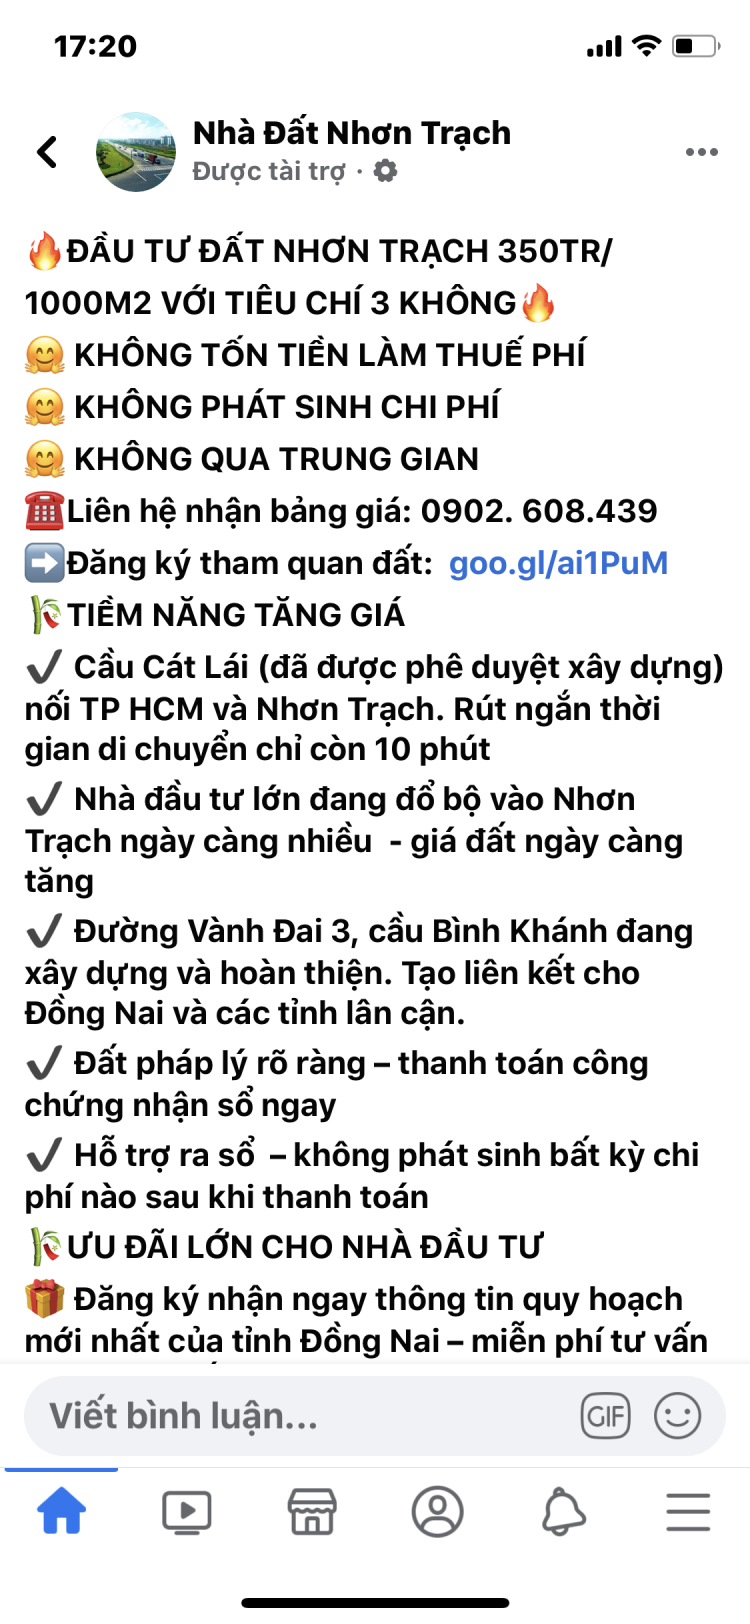 9/1/2020 Cầu Cát Lái , Đồng Nai háo hức chủ động, Tp HCM hờ hững!